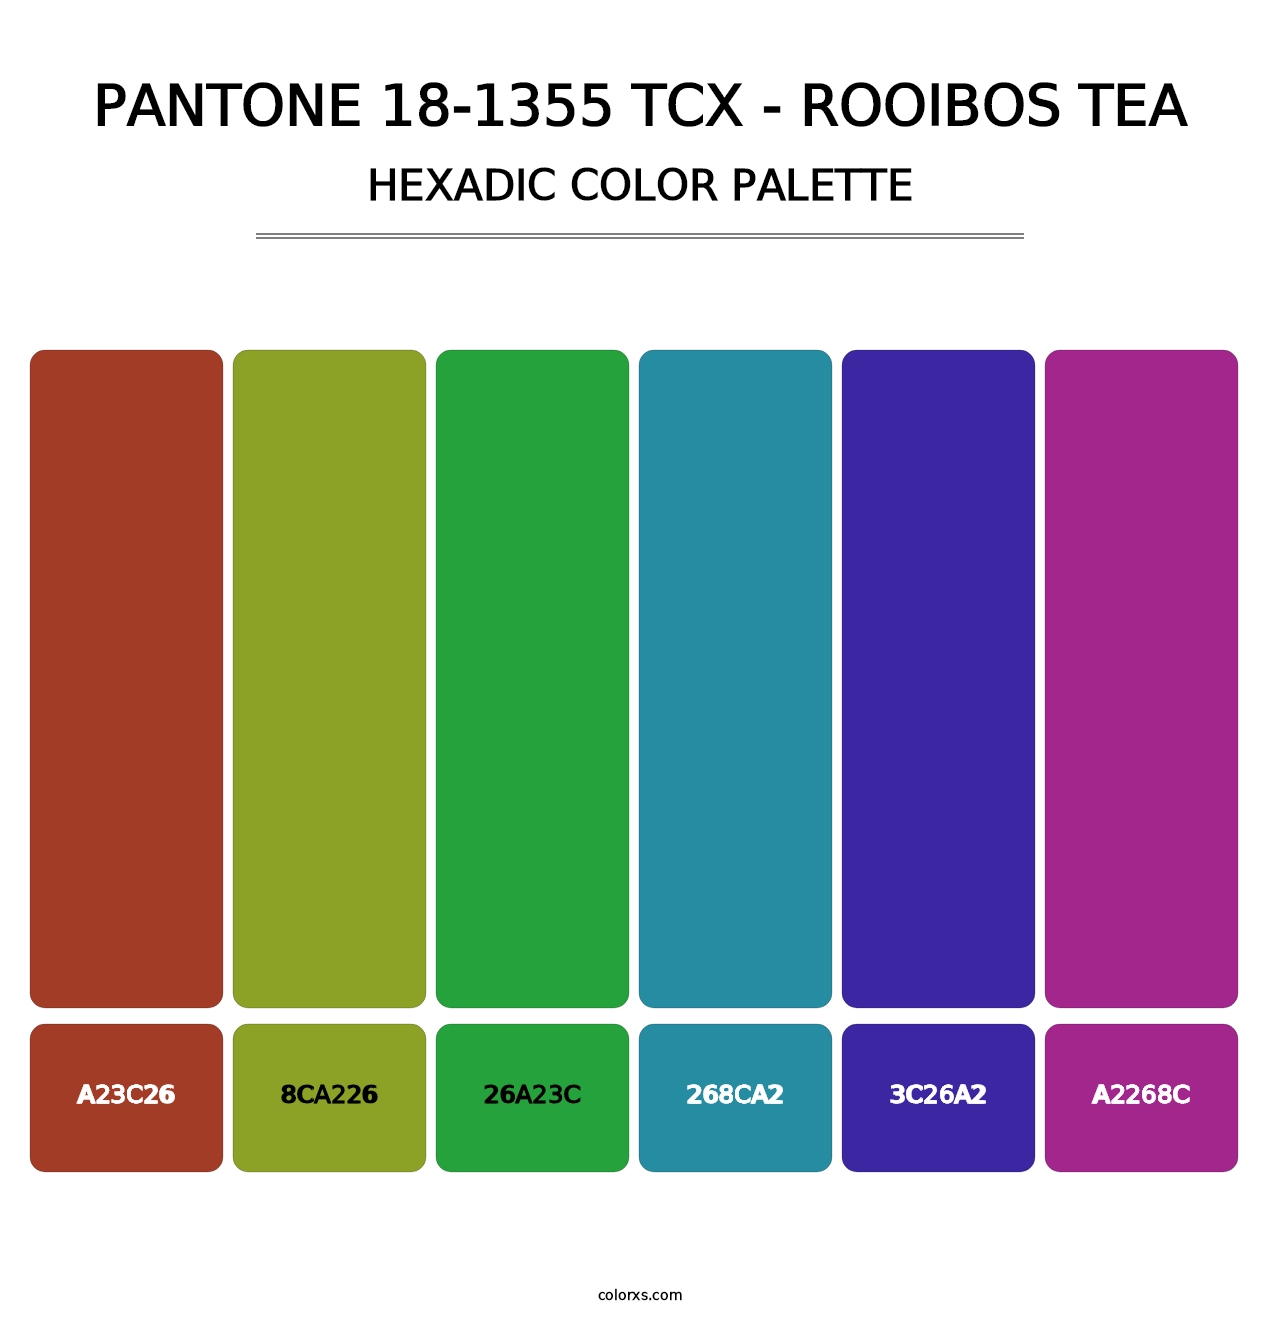 PANTONE 18-1355 TCX - Rooibos Tea - Hexadic Color Palette